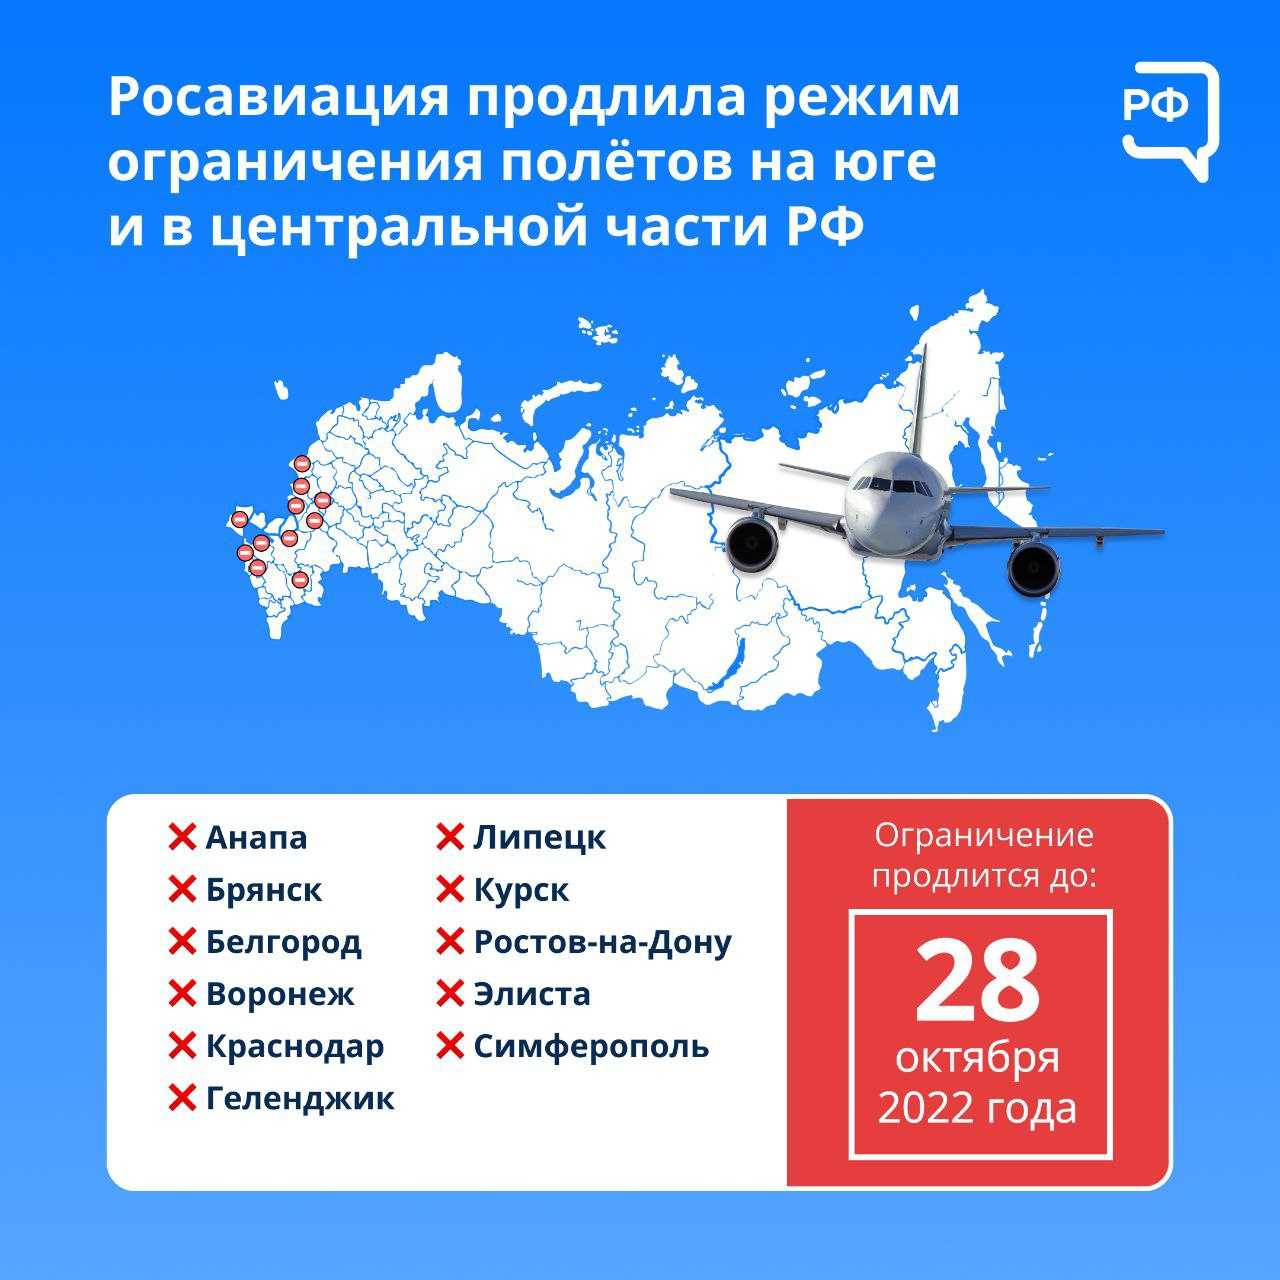 Когда откроются аэропорты на юге россии в 2022 году? сообщение росавиации. список закрытых аэропортов на юге рф на сегодня, 11 июня 2022. какие аэропорты на юге россии открыты и продолжают работу на сегодня